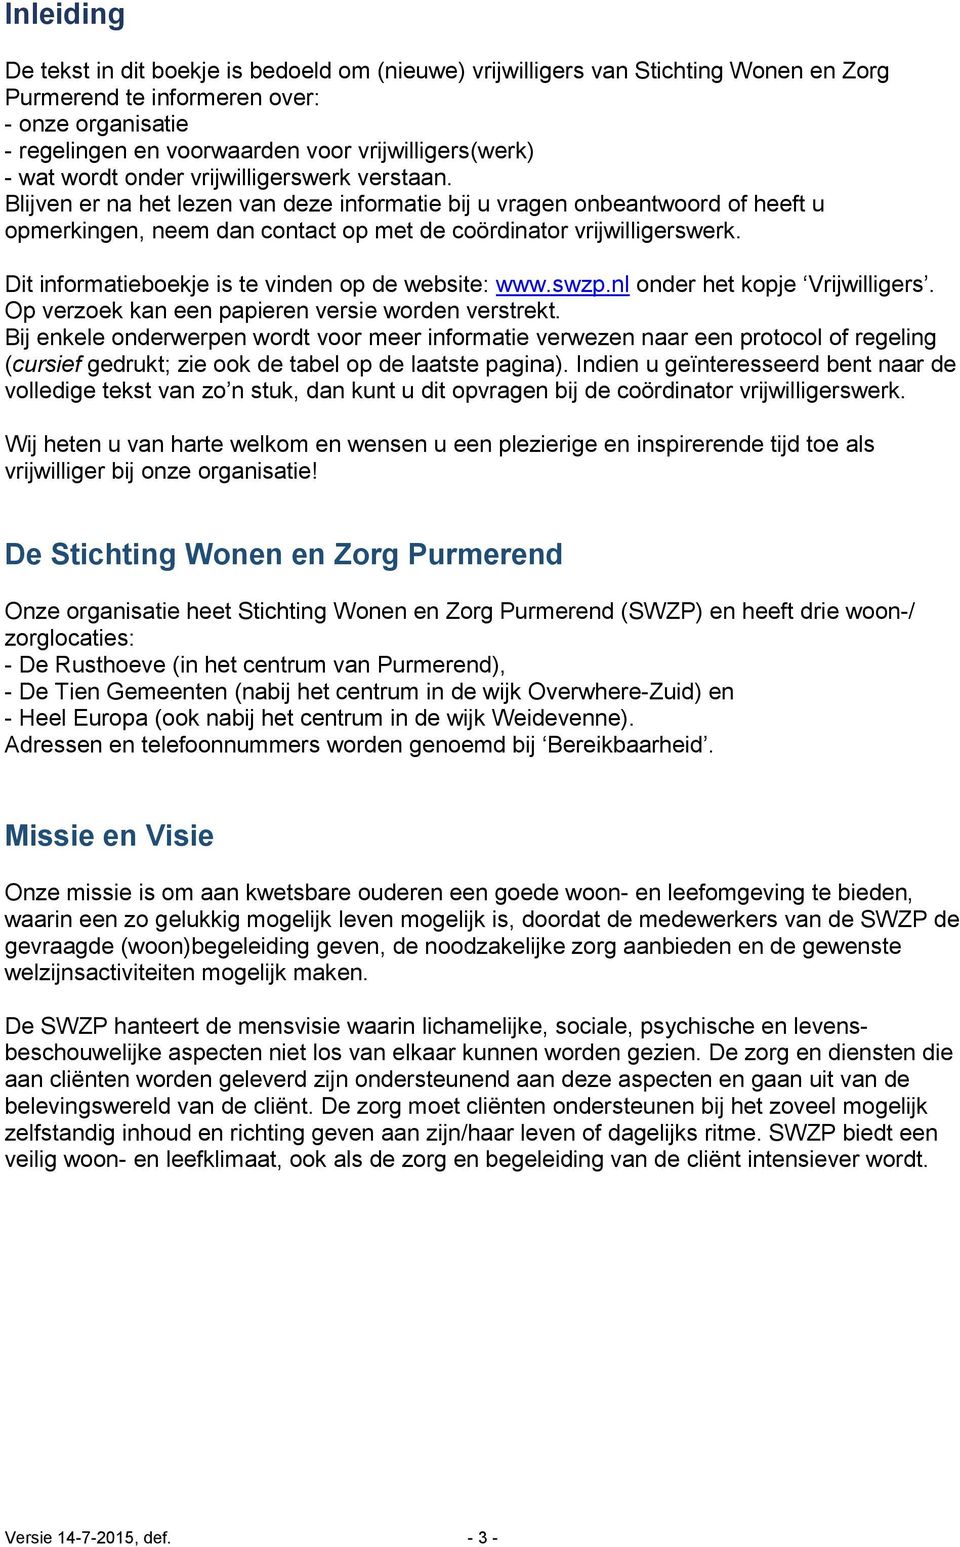 Dit informatieboekje is te vinden op de website: www.swzp.nl onder het kopje Vrijwilligers. Op verzoek kan een papieren versie worden verstrekt.